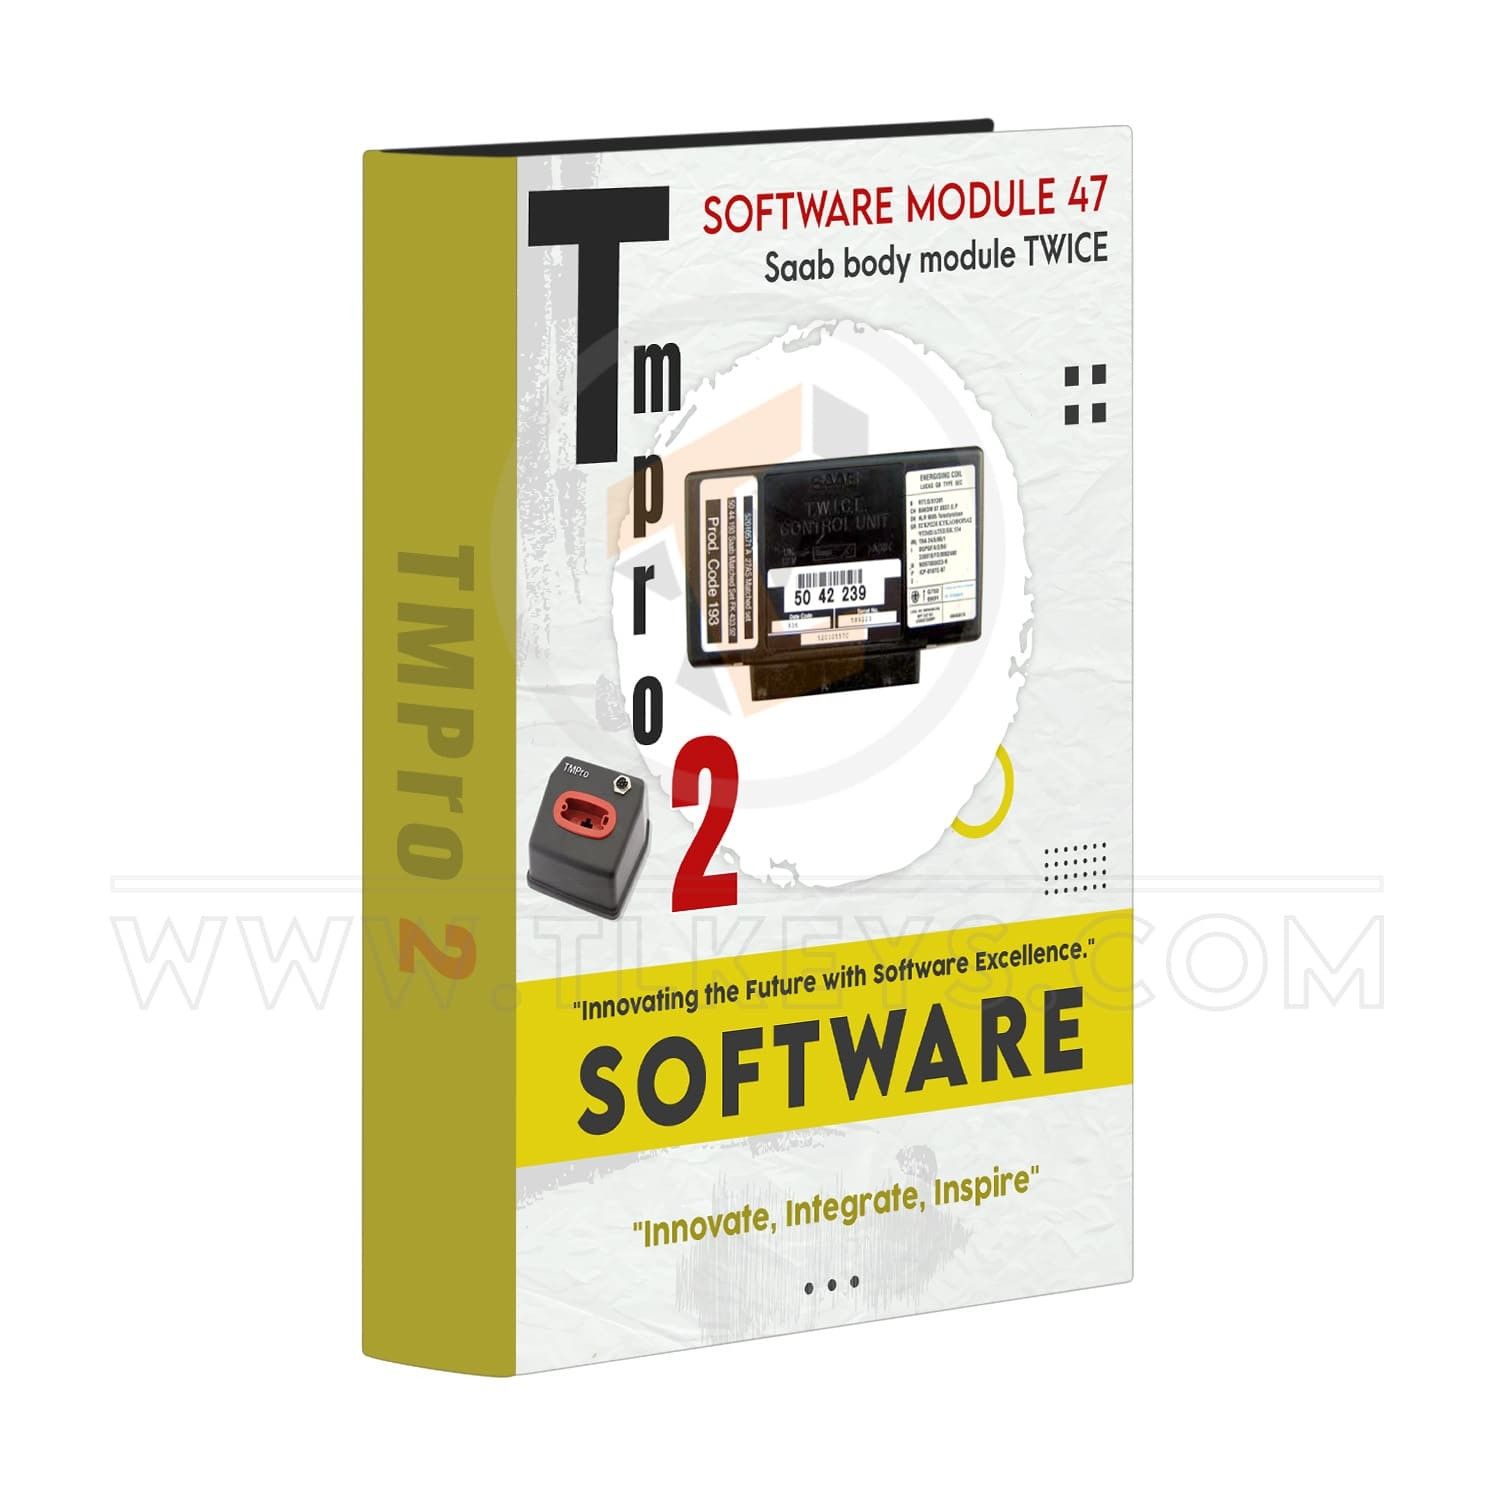 Tmpro 2 Tmpro 2 Software module 47 – Saab body module TWICE software